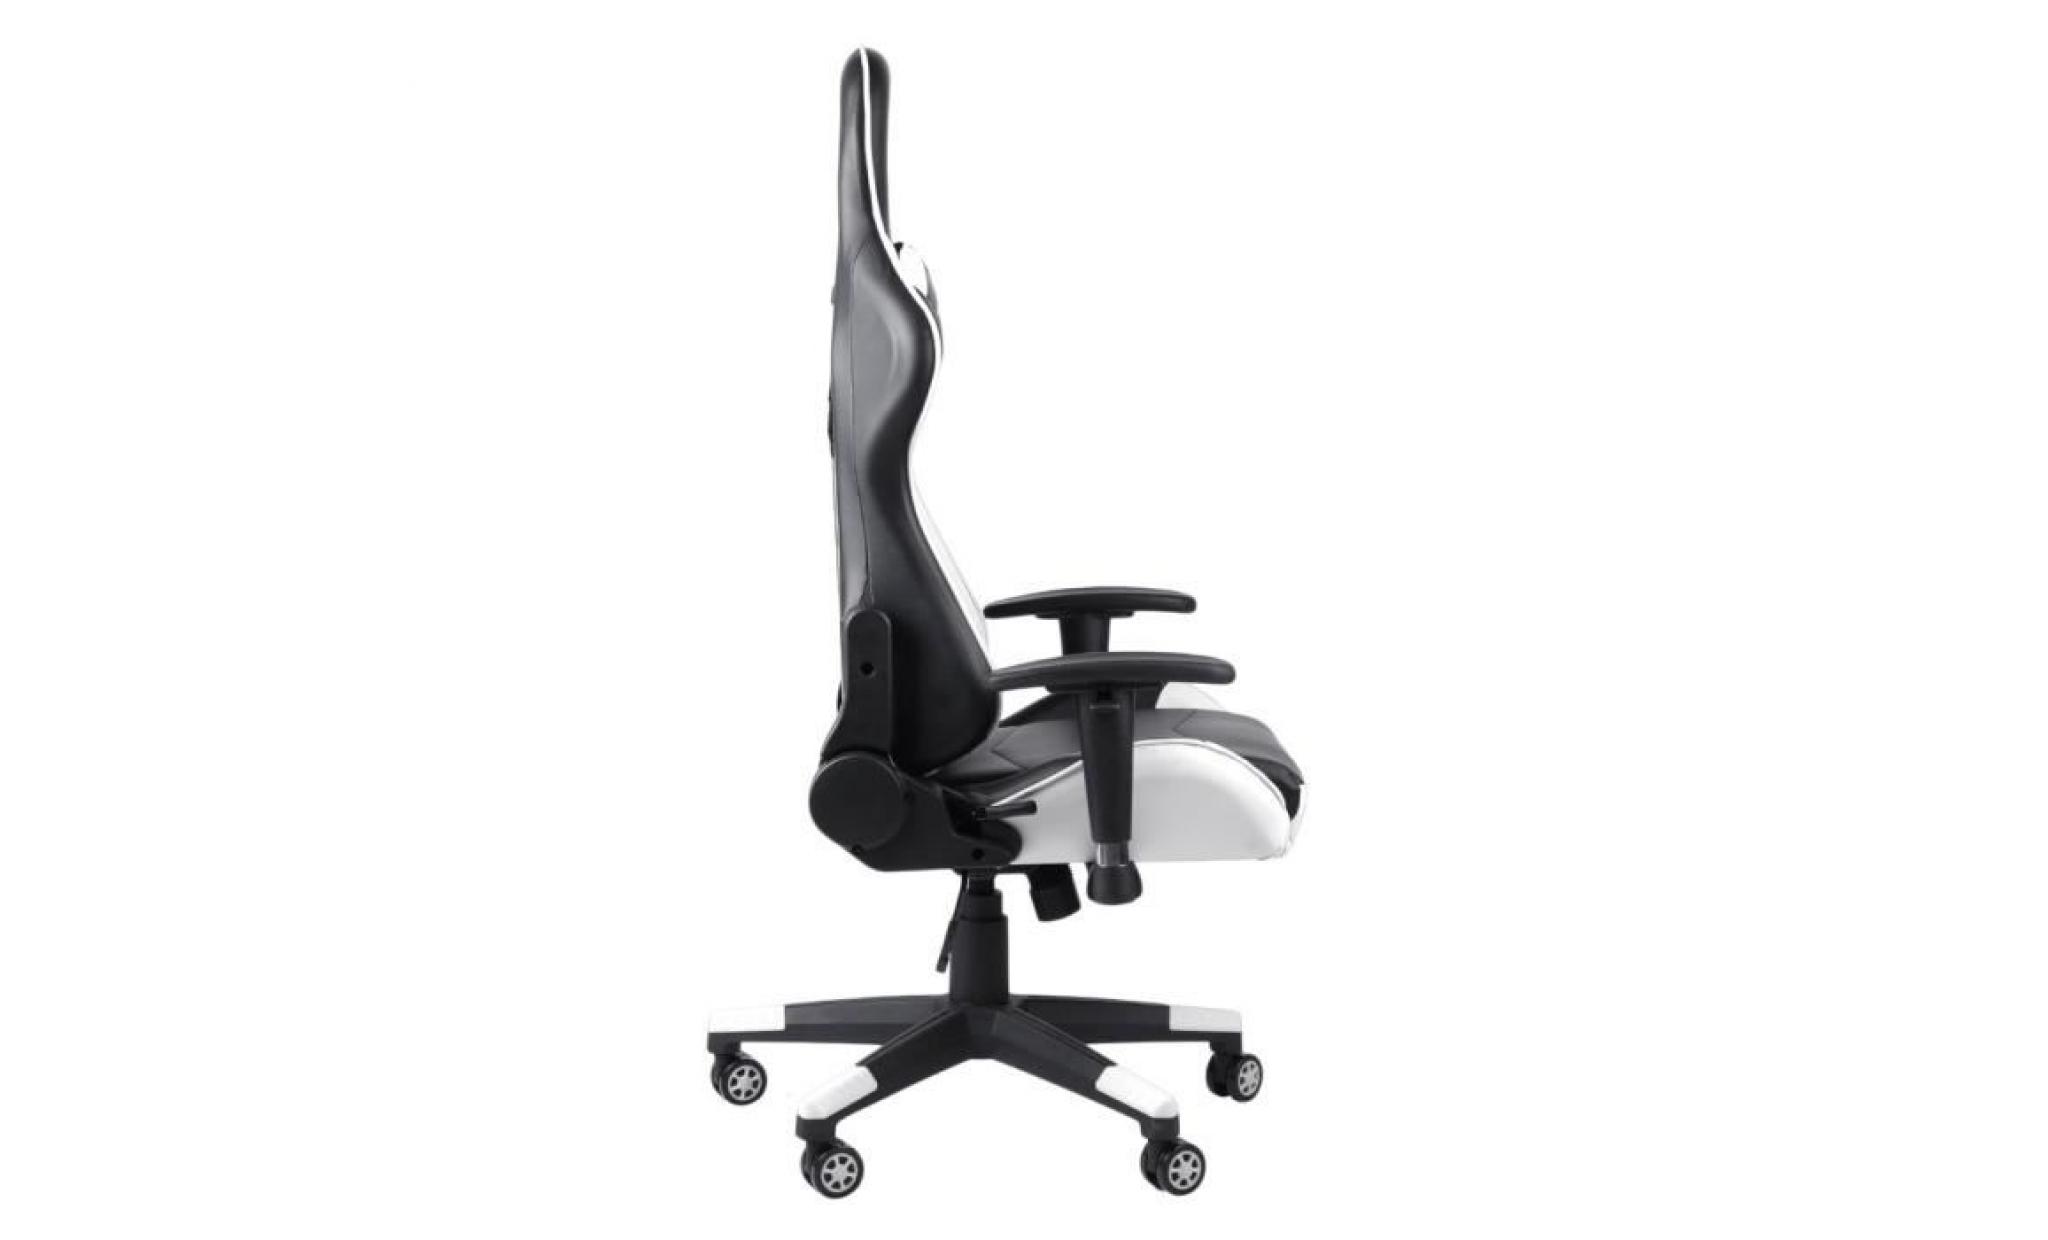 leshp chaise de bureau fauteuil de bureau gaming design baquet   style contemporain   rouge pas cher